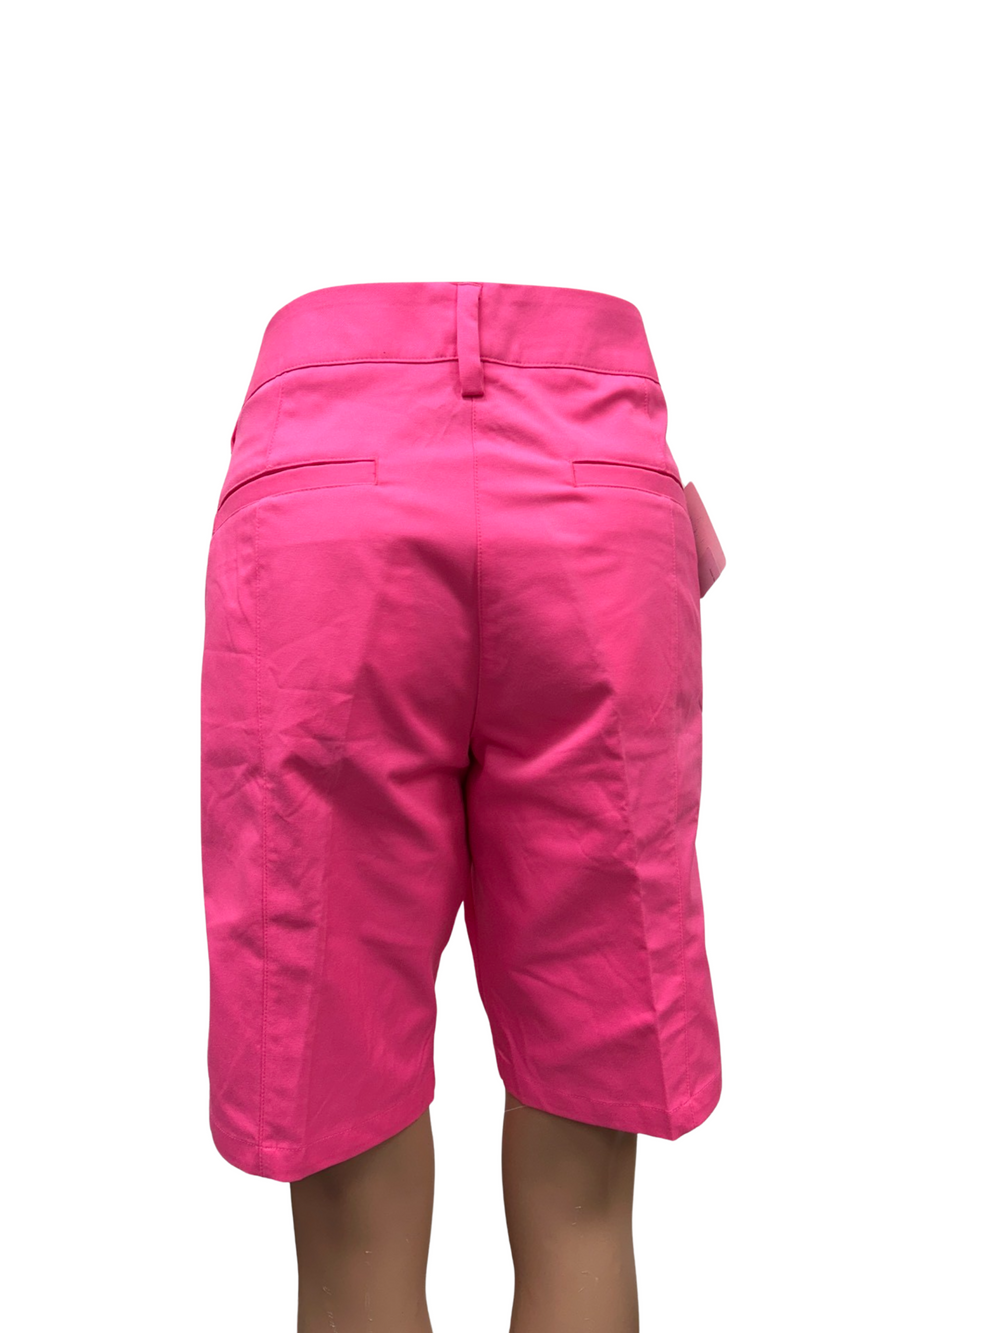 Adidas Bermuda Shorts - Pink - Size 10 - Skorzie